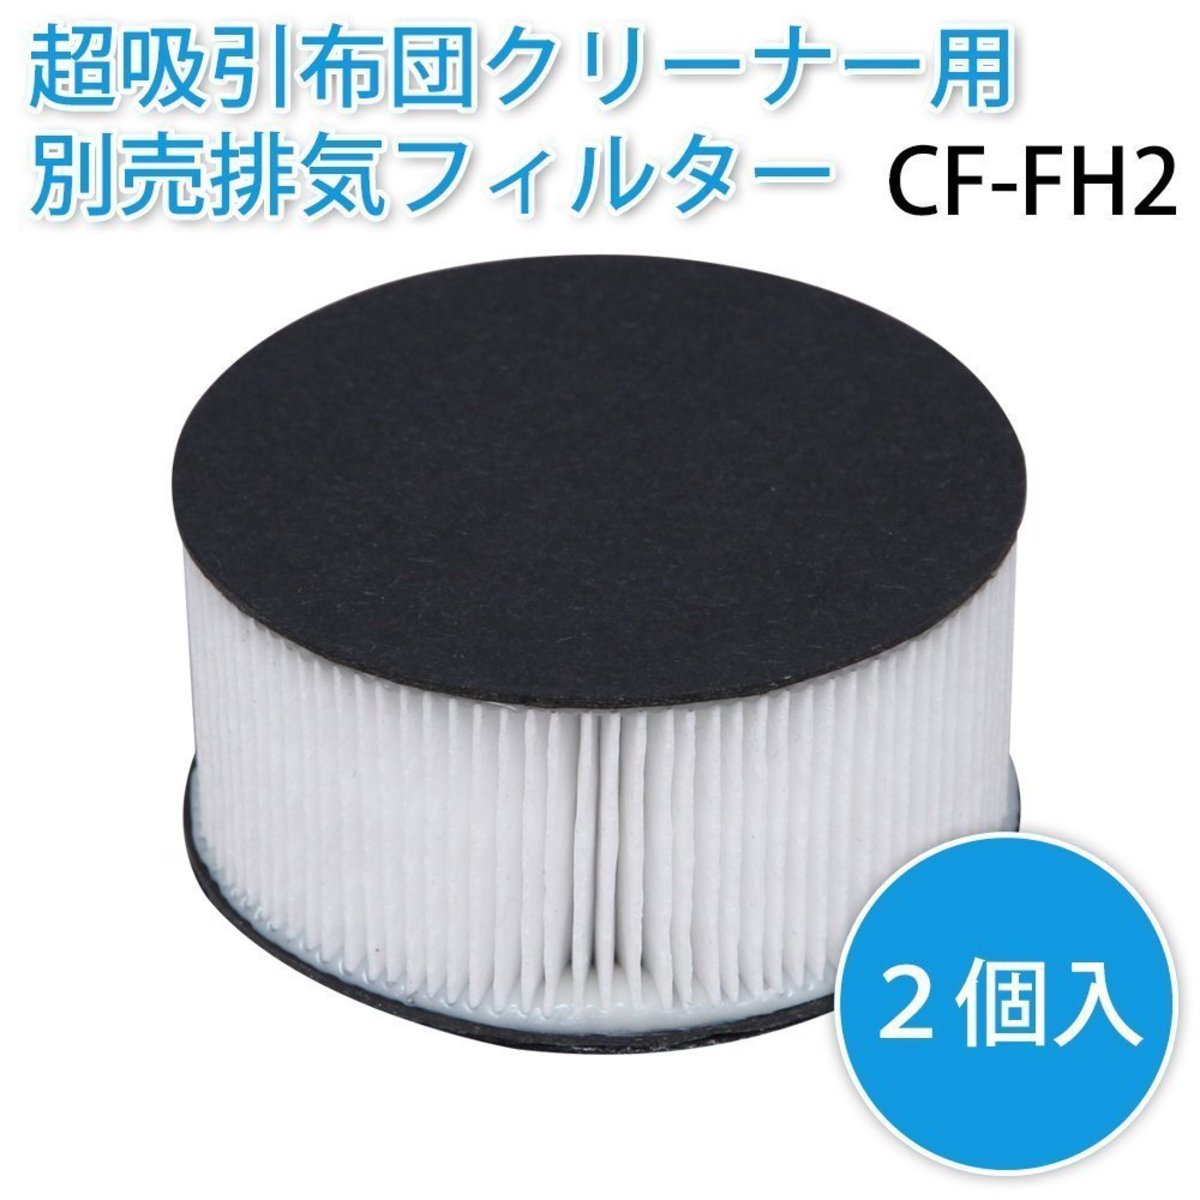 IRIS - CF-FH2 IC-FAC2/FAC3 超輕量除塵吸塵器專用HEPA抗菌隔塵濾網(2個) 更換裝